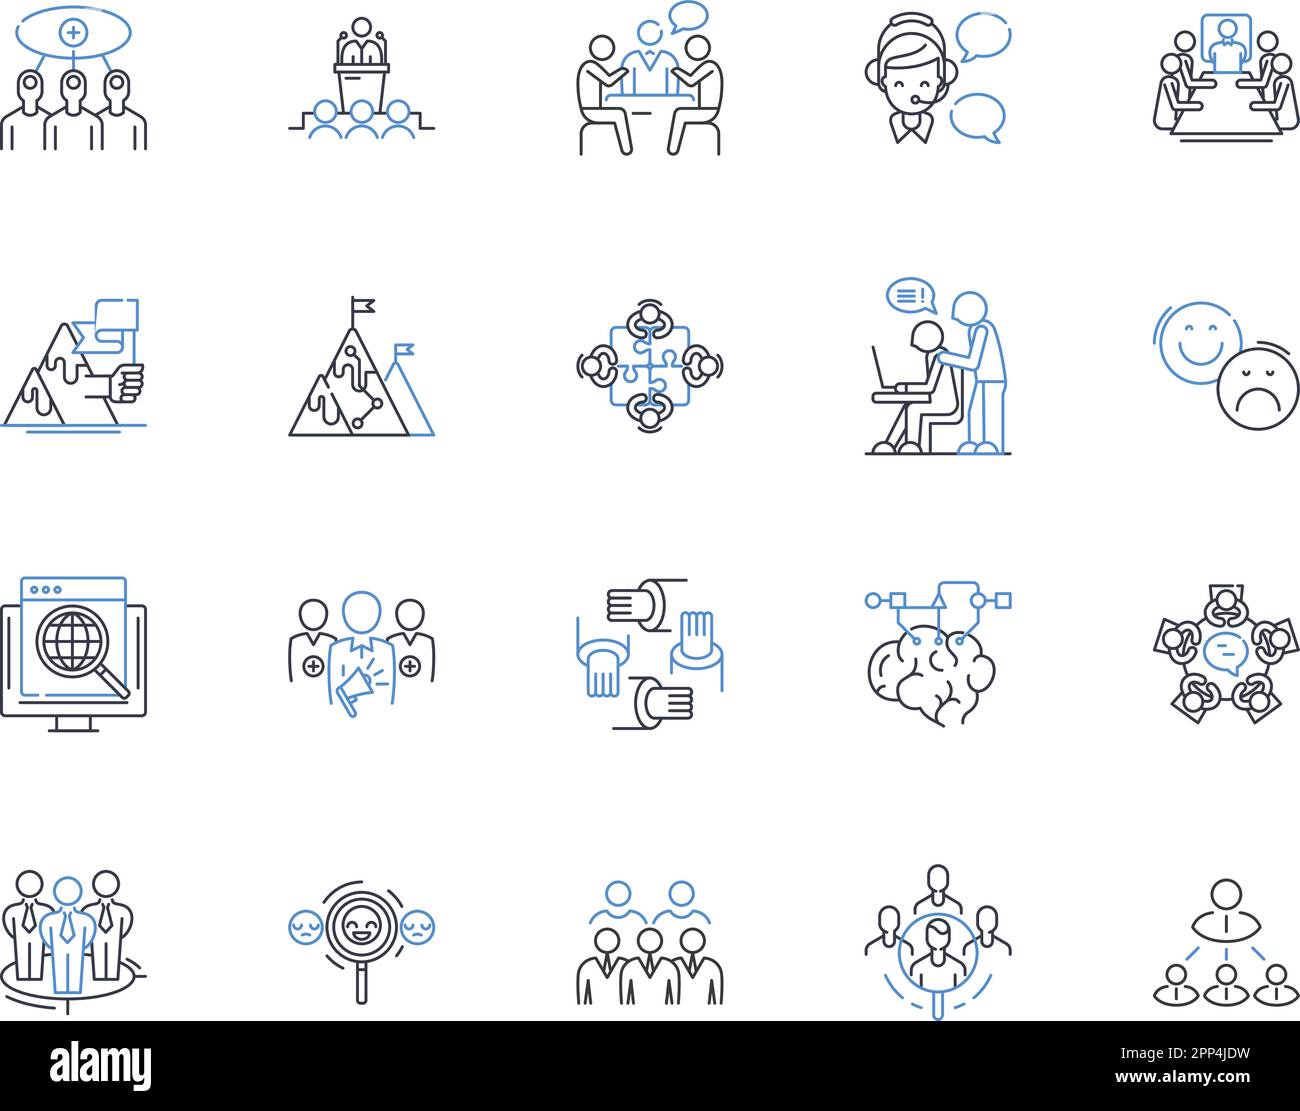 Collection d'icônes de ligne d'effort combinée. la liaison, le travail d'équipe, la synergie, le partenariat, la coopération, coordination, vecteur d'alliance et linéaire Illustration de Vecteur